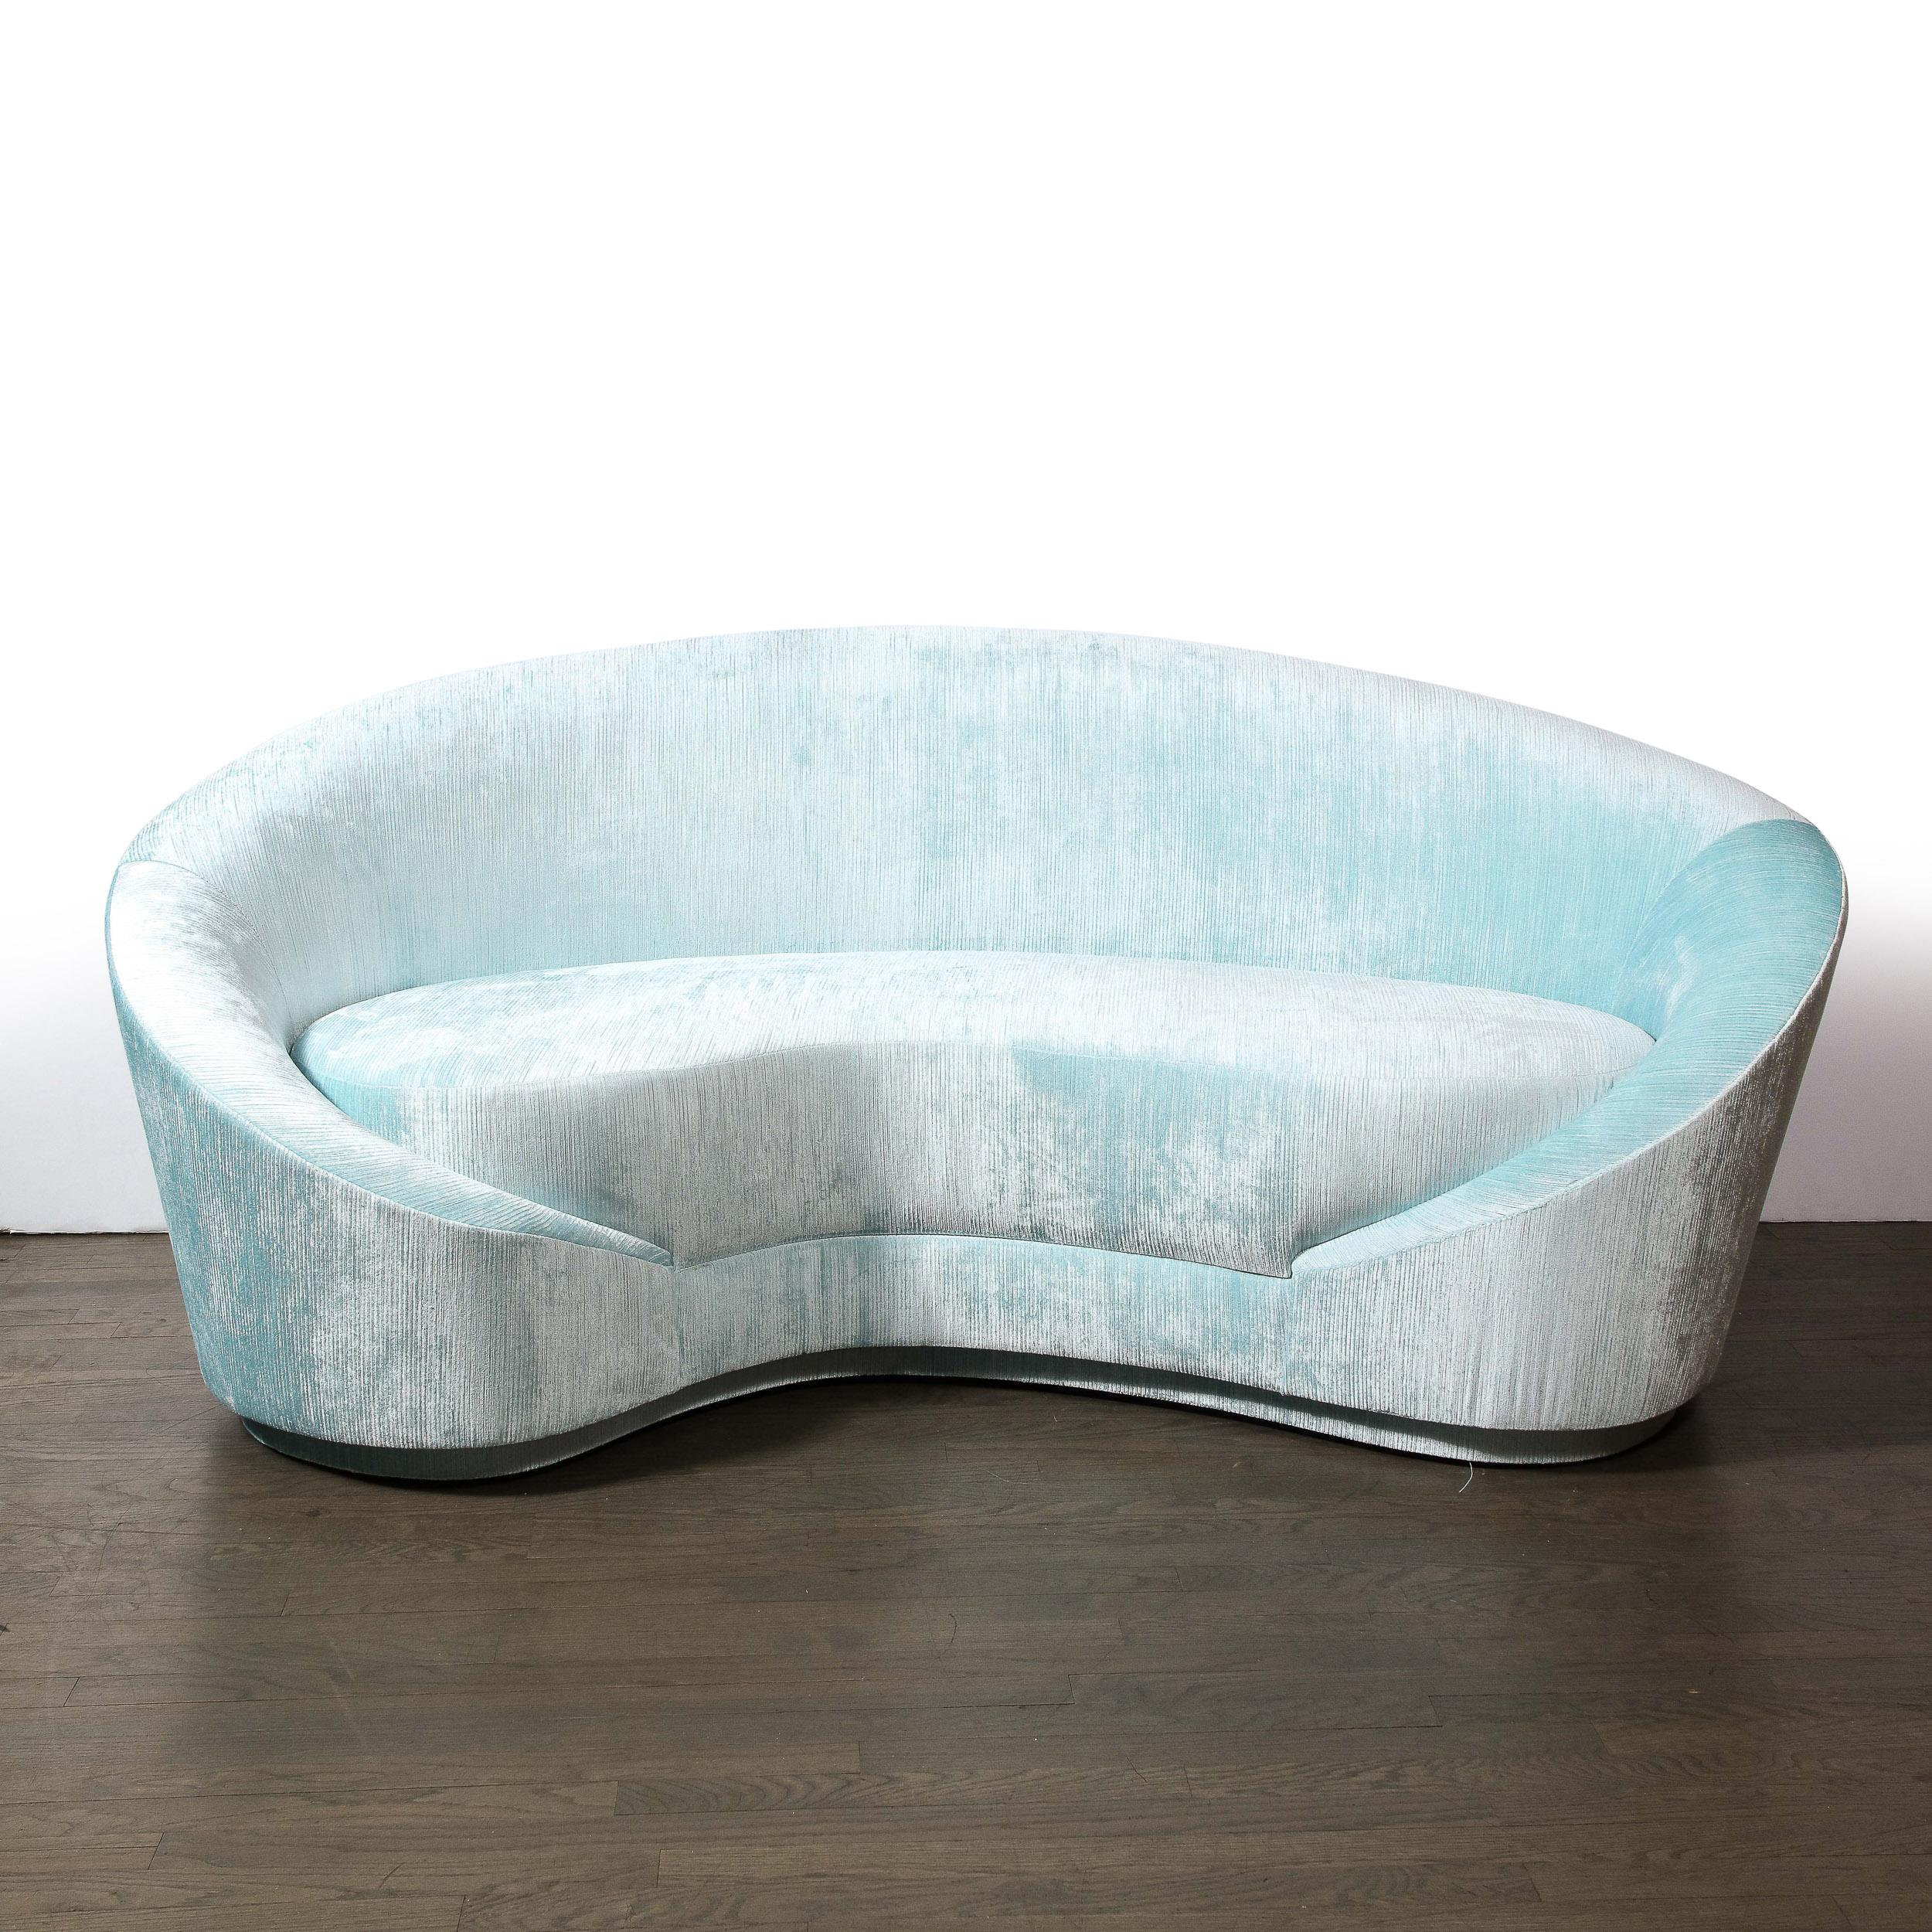 Dieses raffinierte und skulpturale modernistische Sofa wurde von Kunsthandwerkern im Bundesstaat New York von High Style Deco handgefertigt, inspiriert von einem zeitlosen Design aus den 1940er Jahren. Das Stück verbindet nahtlos die Eleganz der